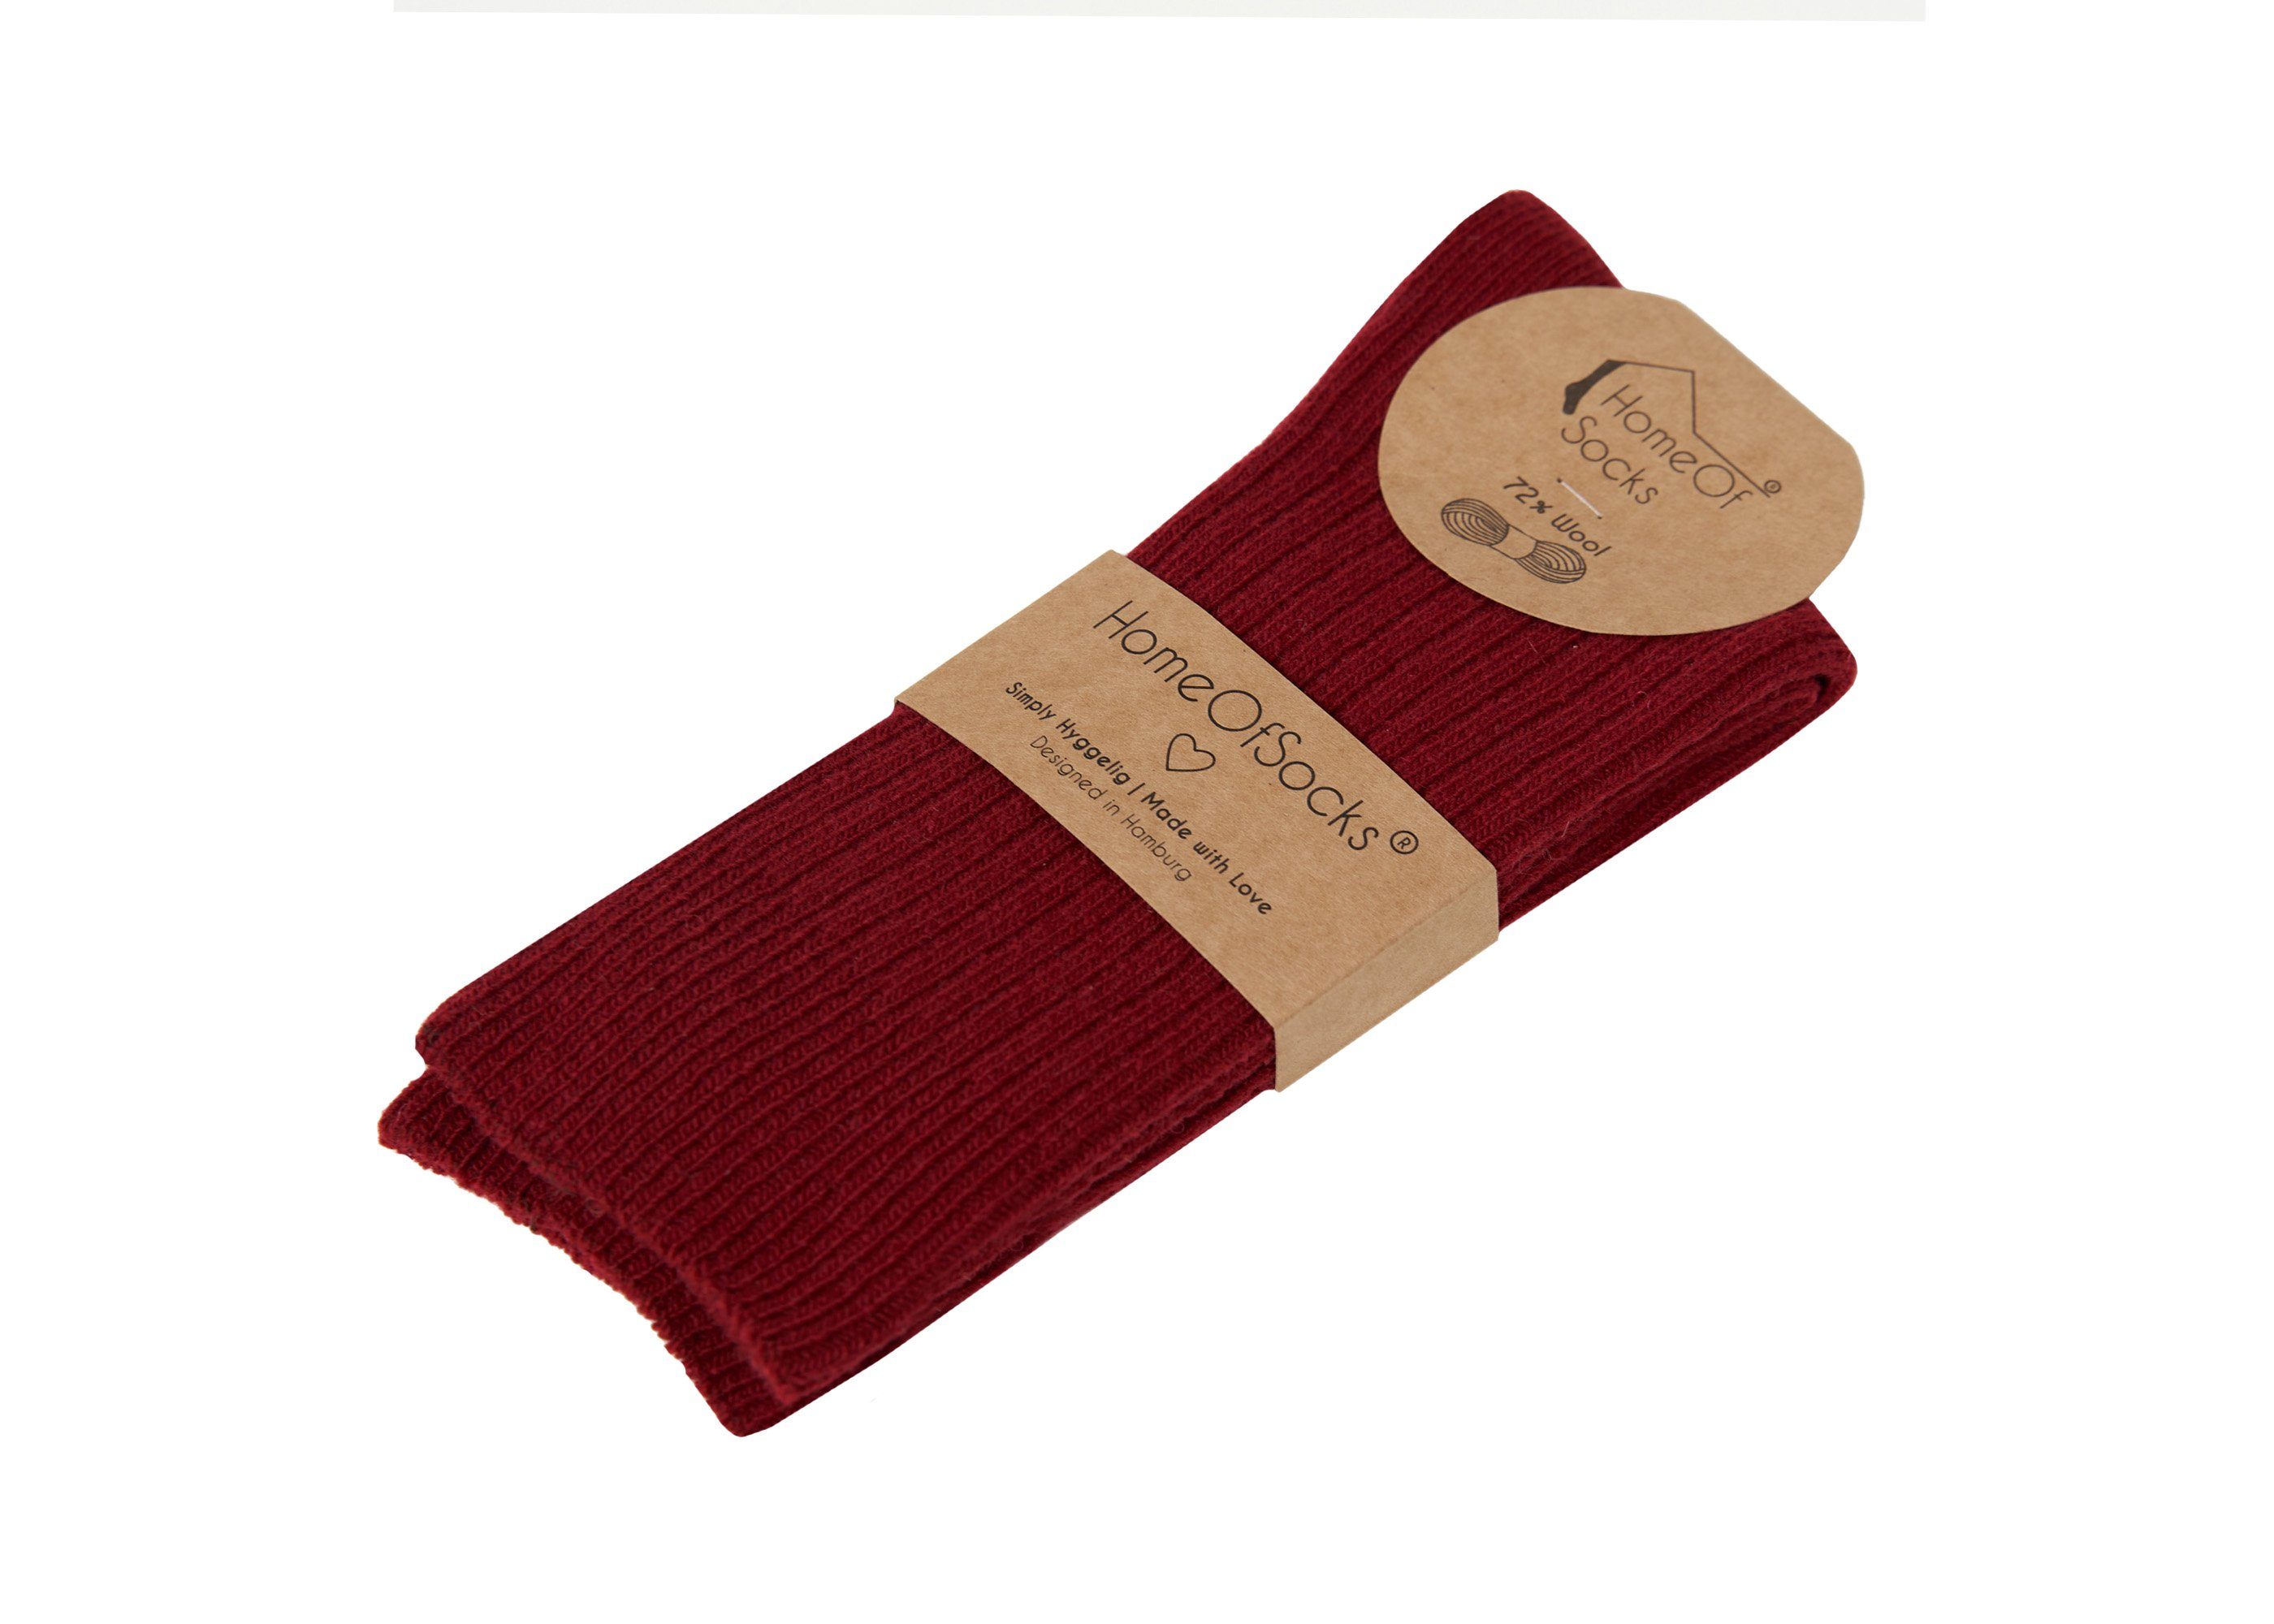 HomeOfSocks Bunt Wollsocken Bunte Hochwertige Dünn Socken Uni Weinrot mit Druckarm Wollanteil Wollsocken 72% Dünne